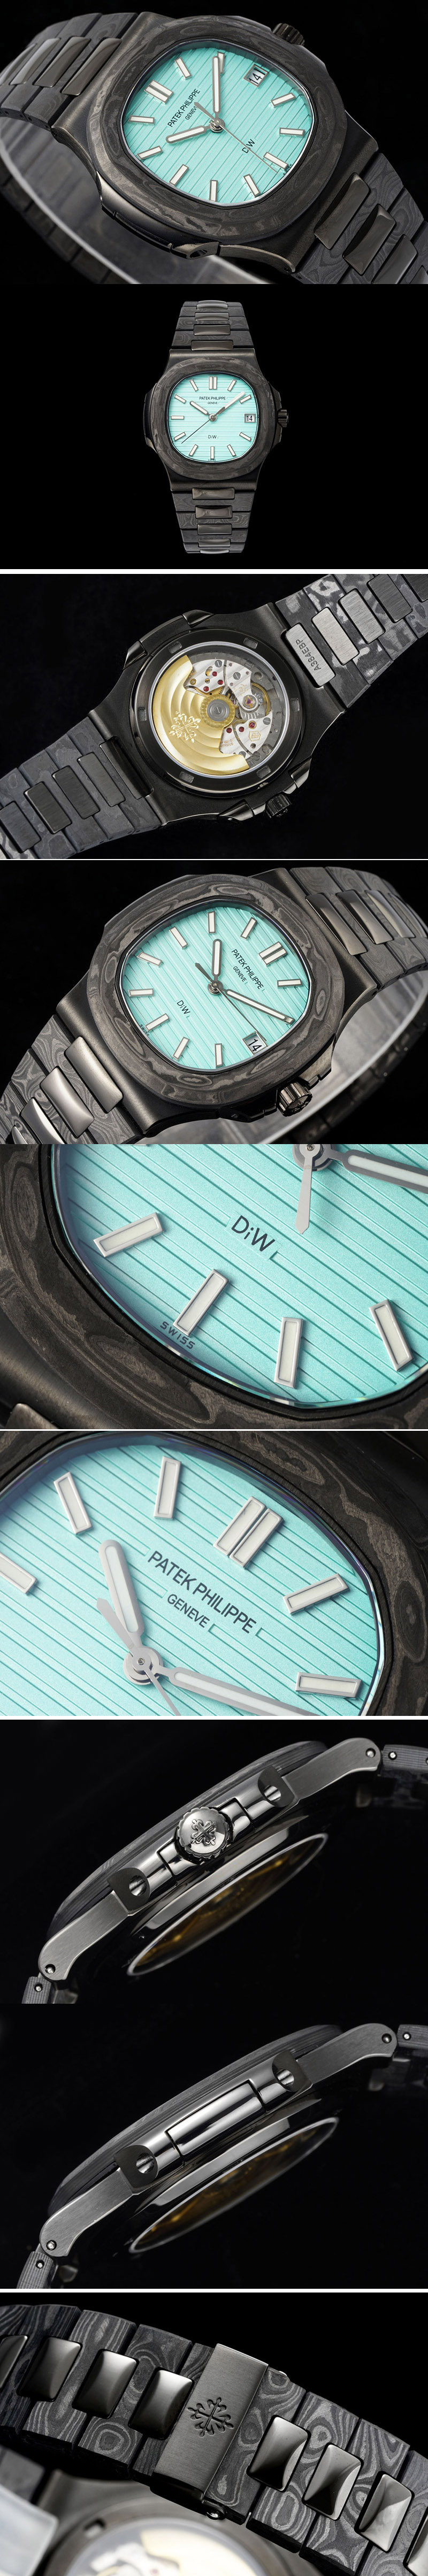 Replica Patek Philippe Nautilus 5711 DIW Carbon DIWF 1:1 Best Edition Tiffany Blue Textured Dial on Carbon/PVD Bracelet 324CS